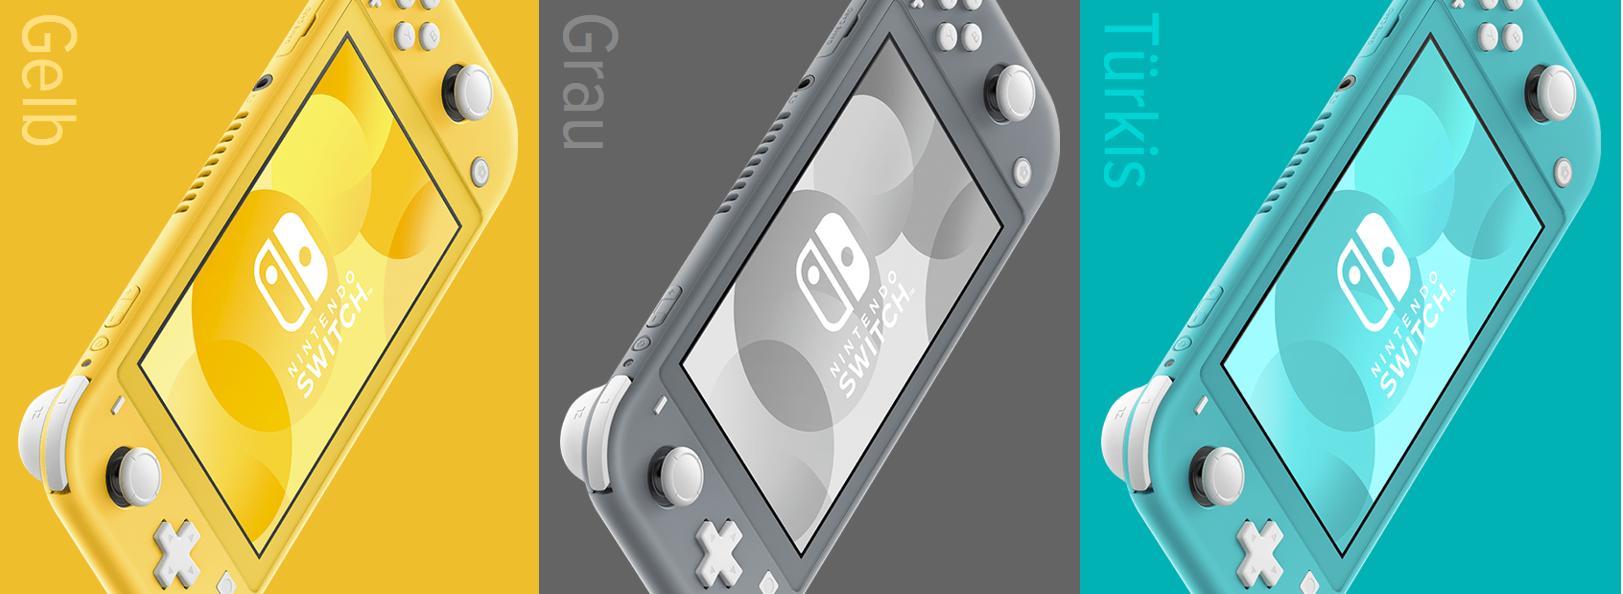 Nintendo stellt Switch Lite vor - Bildergalerie Bild 10